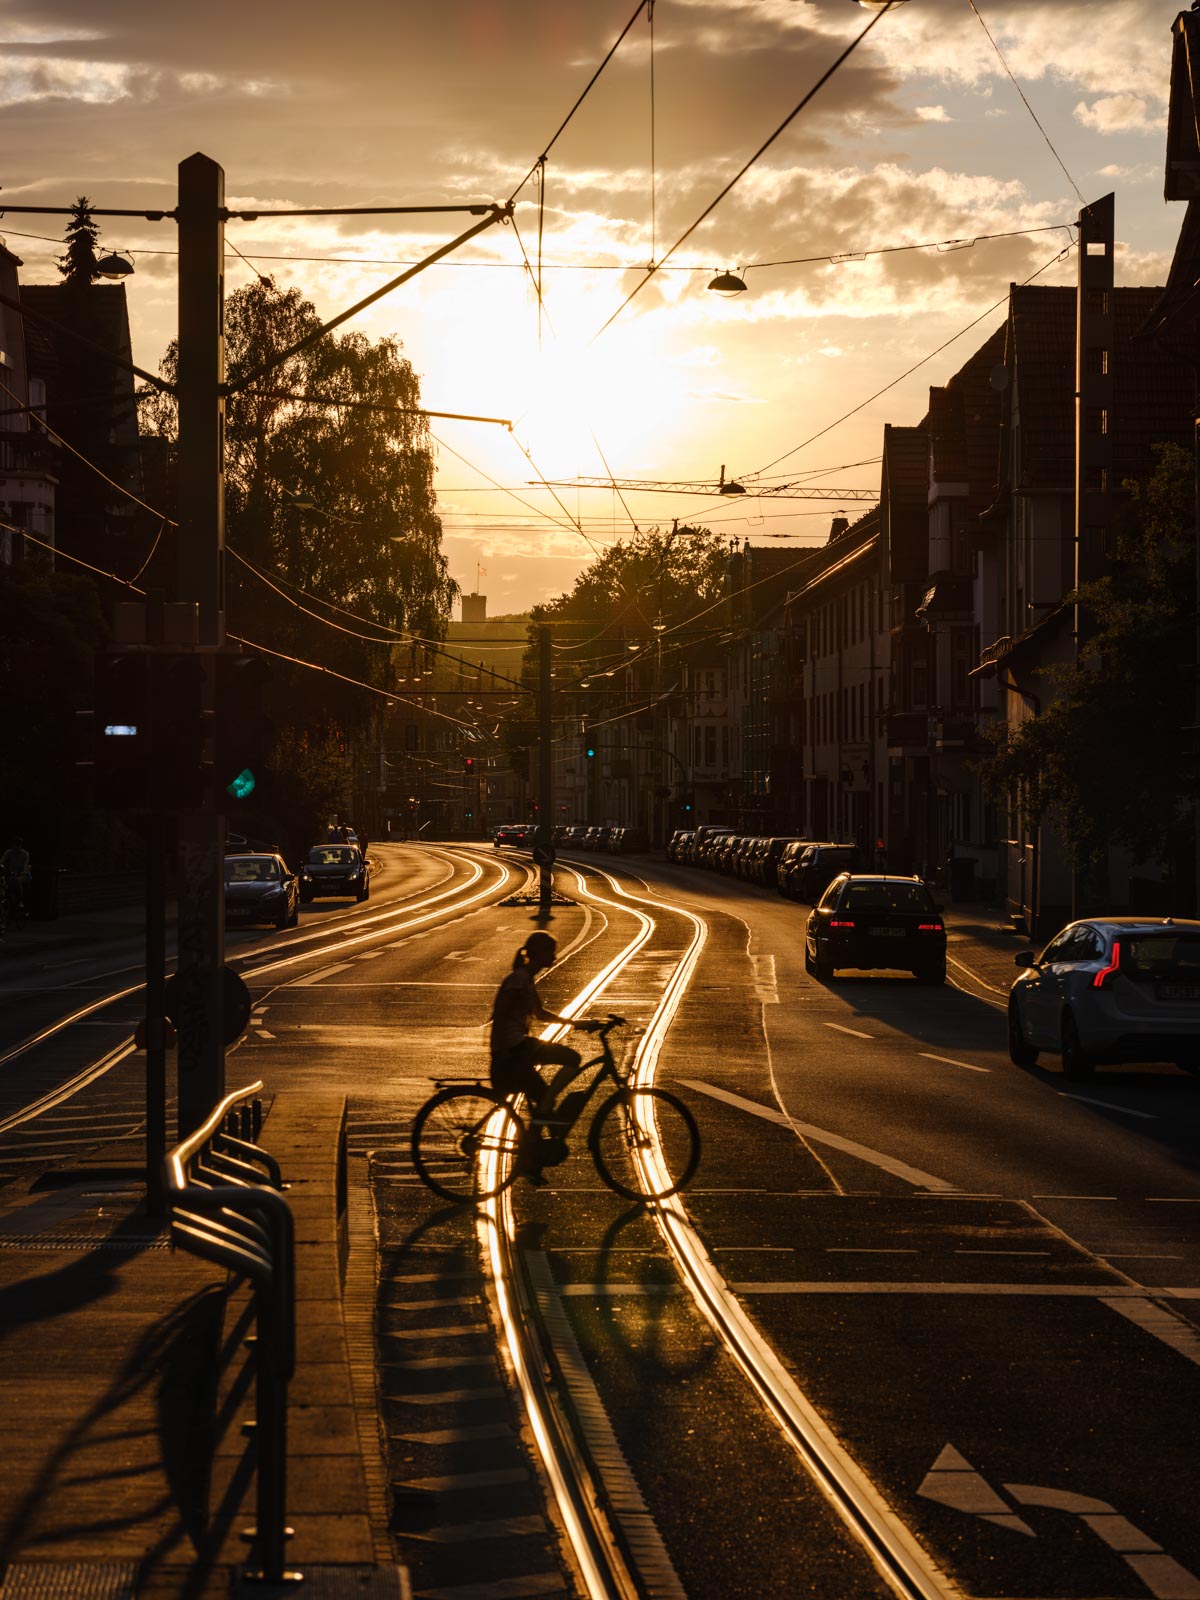 Sunset on 'Detmolder Straße' at the end of June 2020 (Bielefeld, Germany).